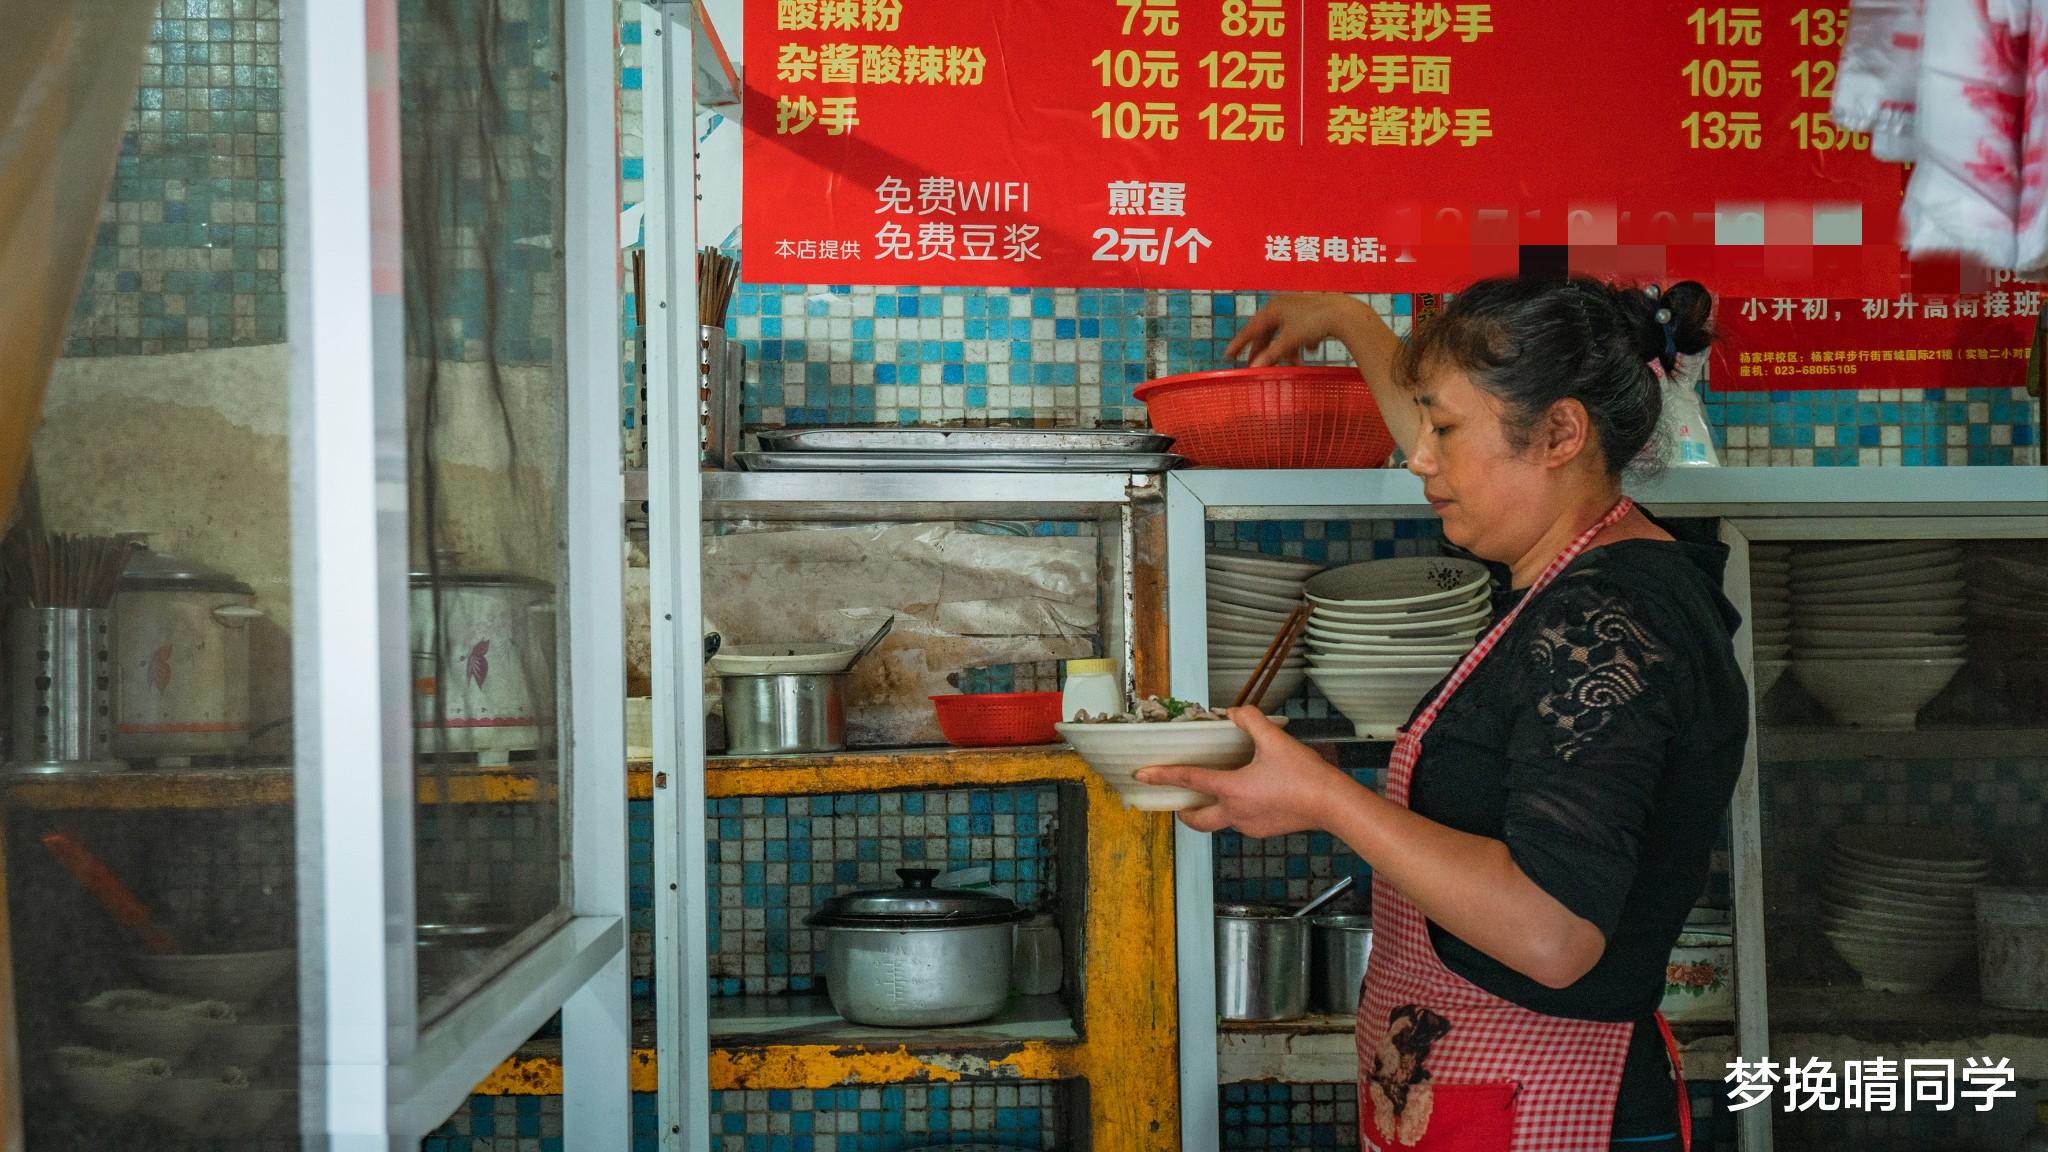 北京市|“穷游”城市的首选，景点大多不收费，吃顿饭10元